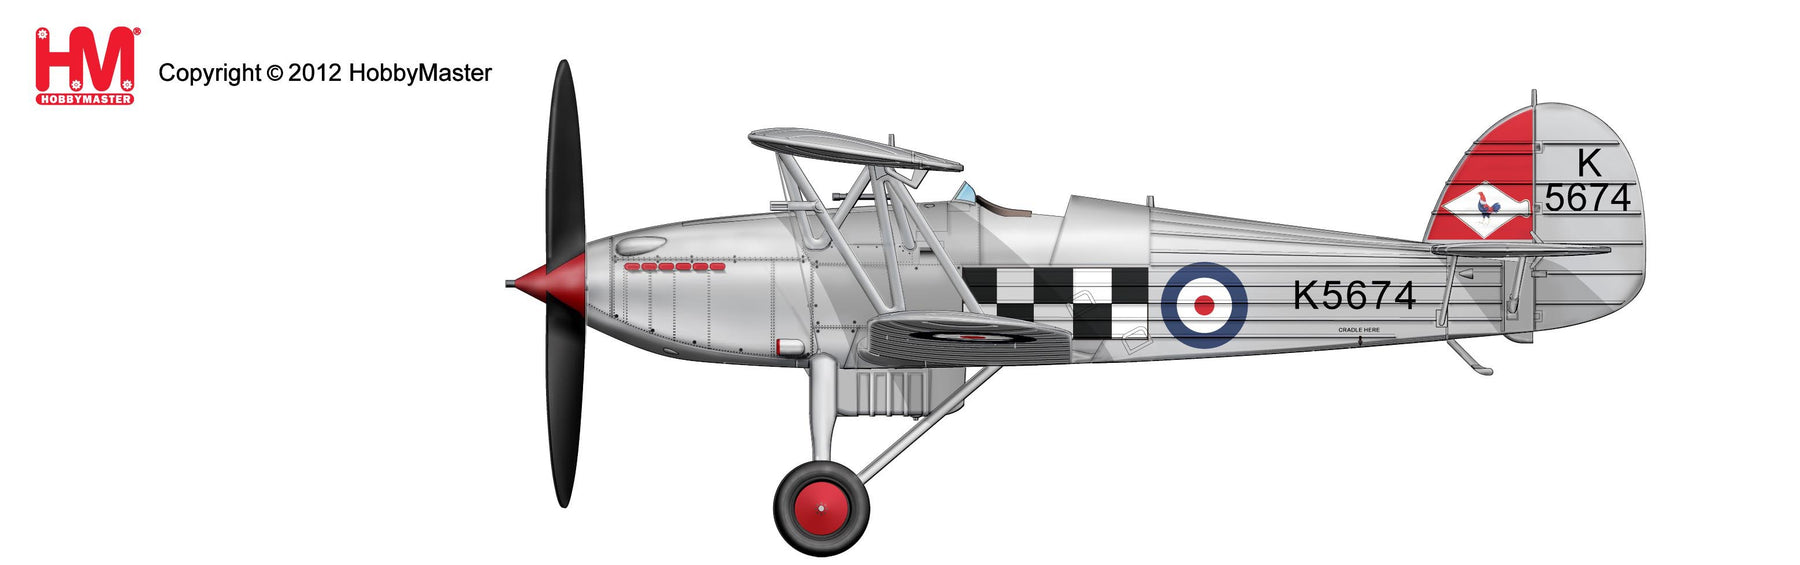 ホーカー フューリーMk.I イギリス空軍 第43飛行隊 30年代 K5674 1/48 [HA8004]